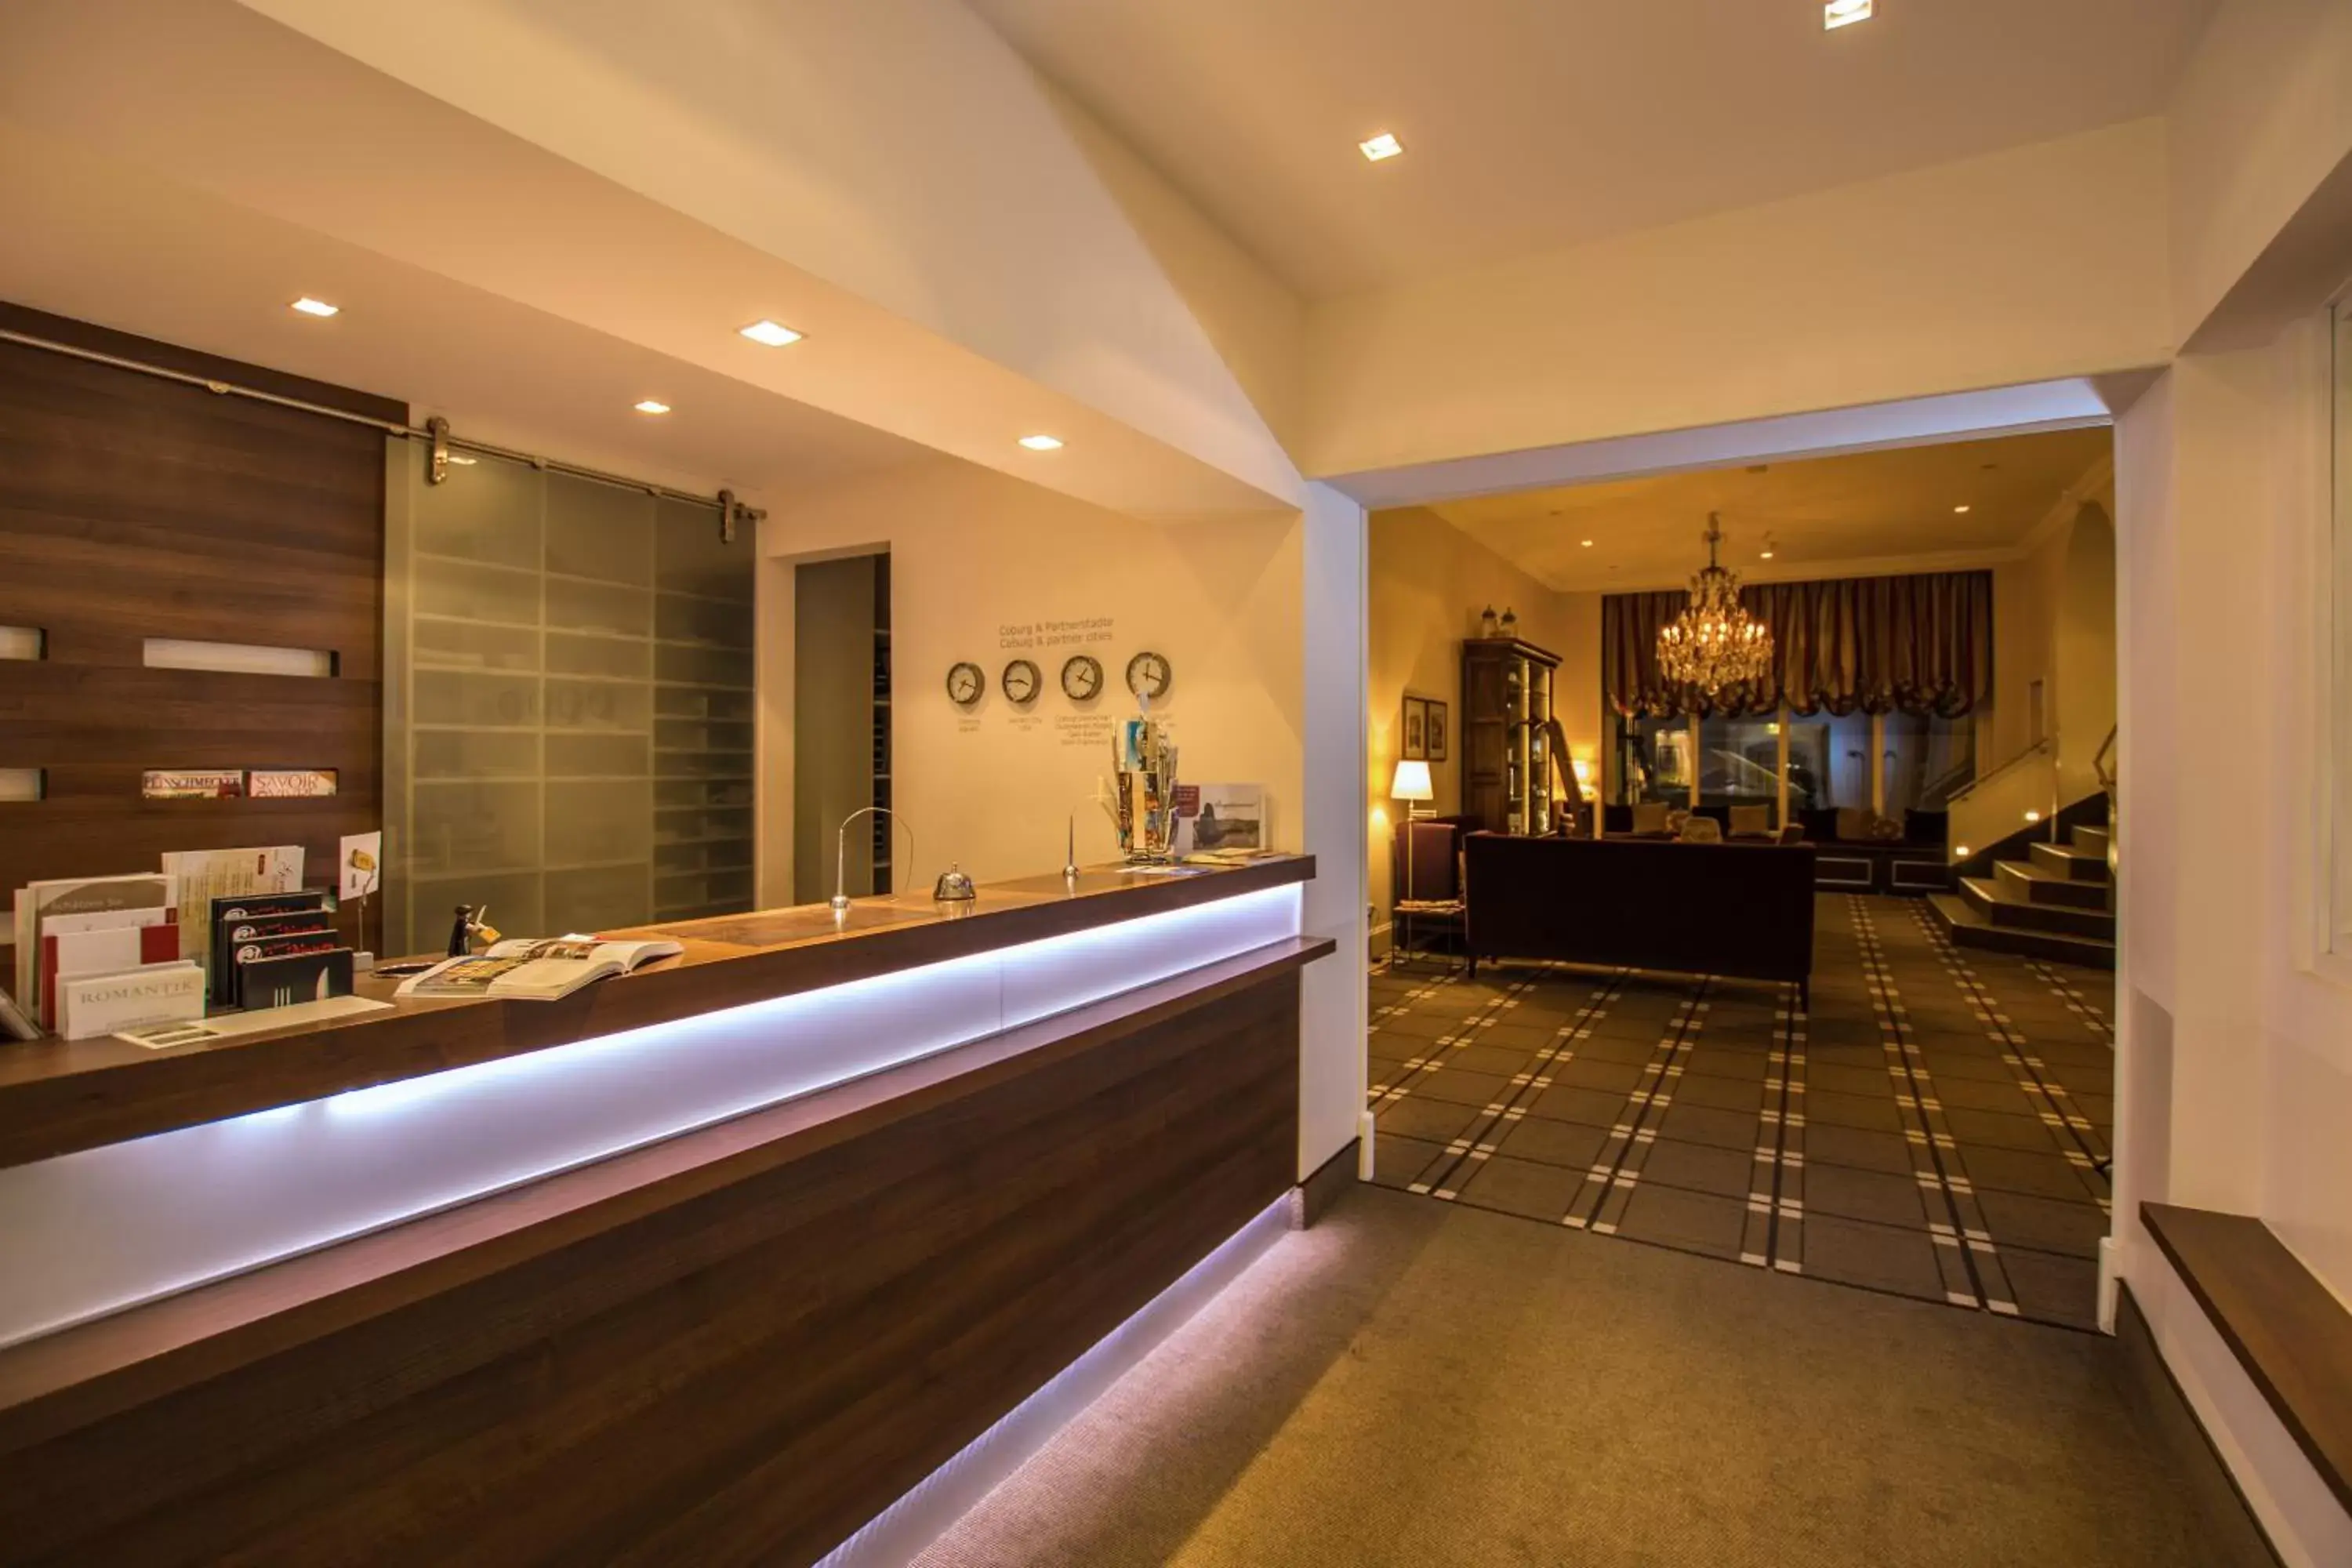 Lobby or reception, Lobby/Reception in Hotel Goldene Traube